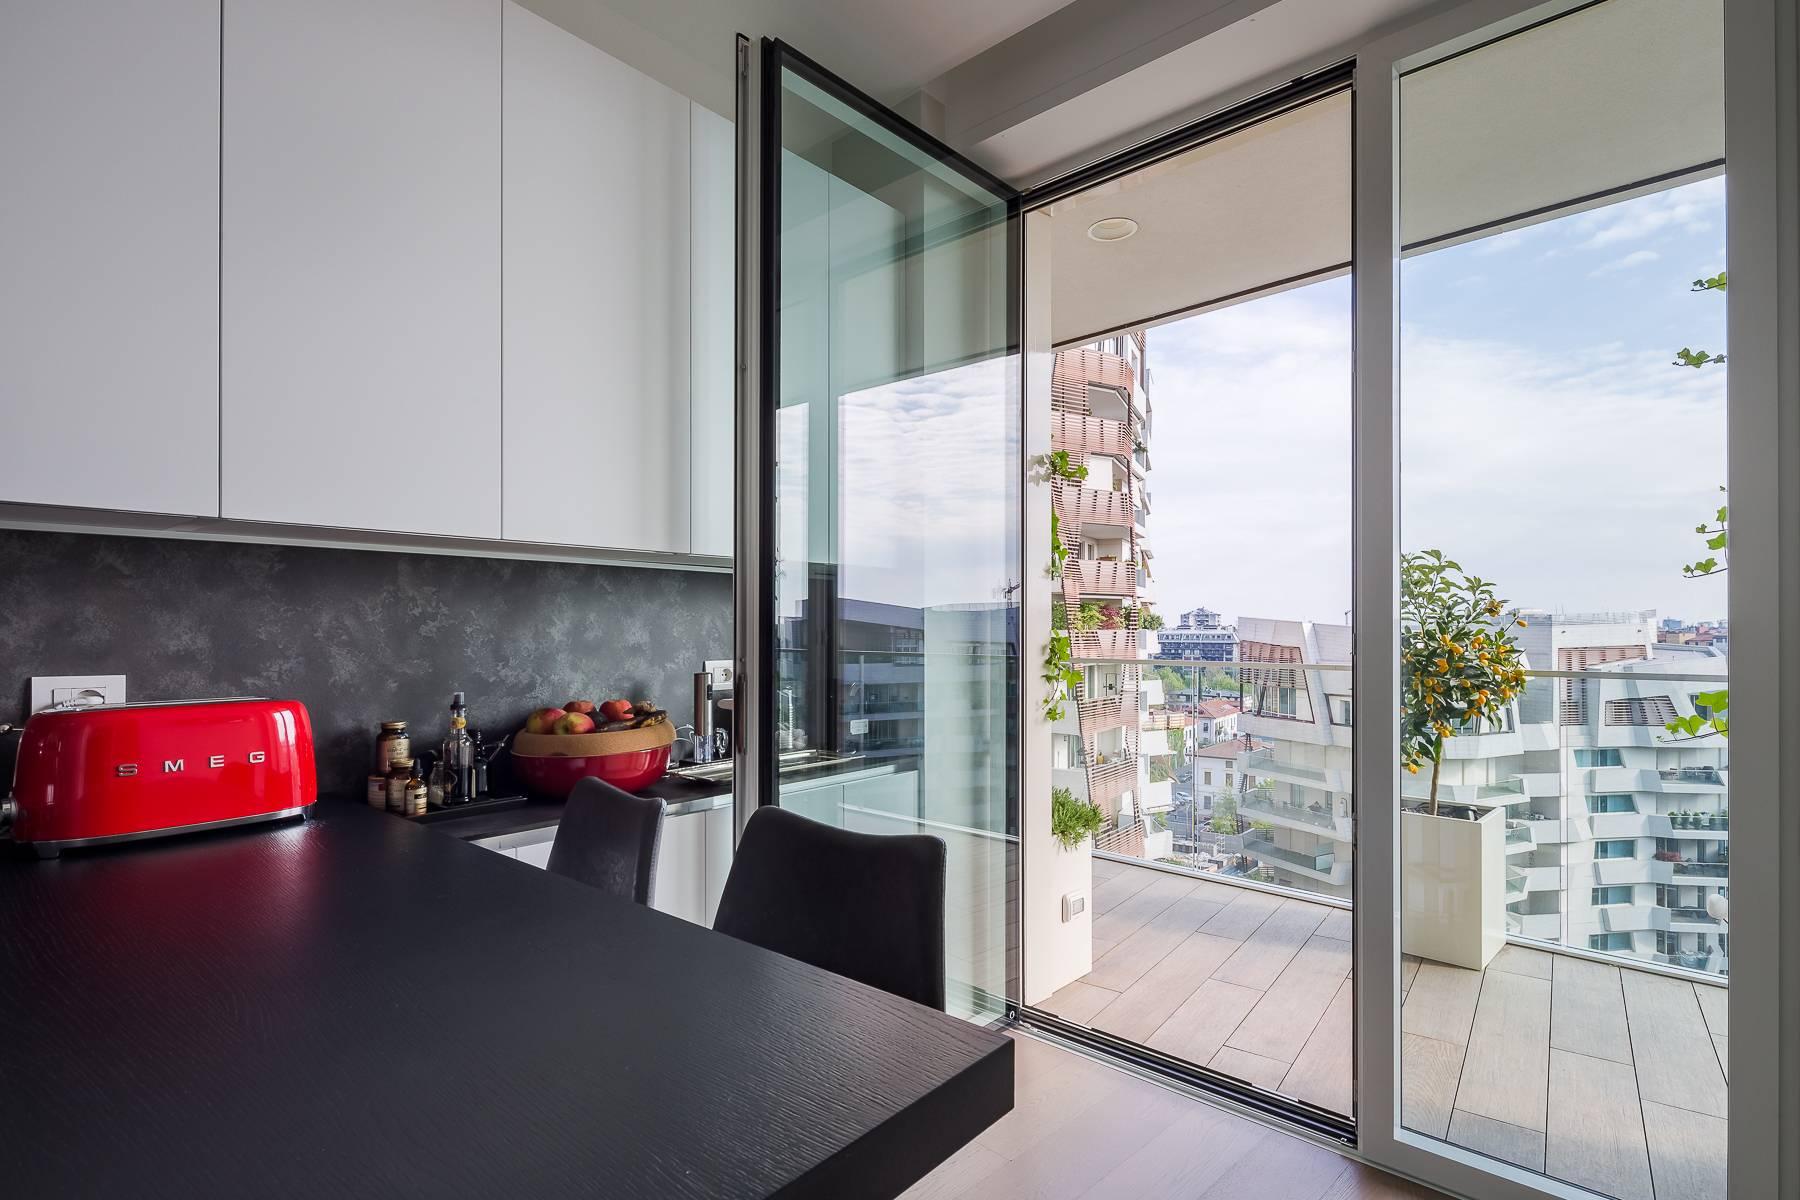 Wunderschöne möblierte Design-Wohnung mit Terrassen im CitylIfe Stadtviertel - 13